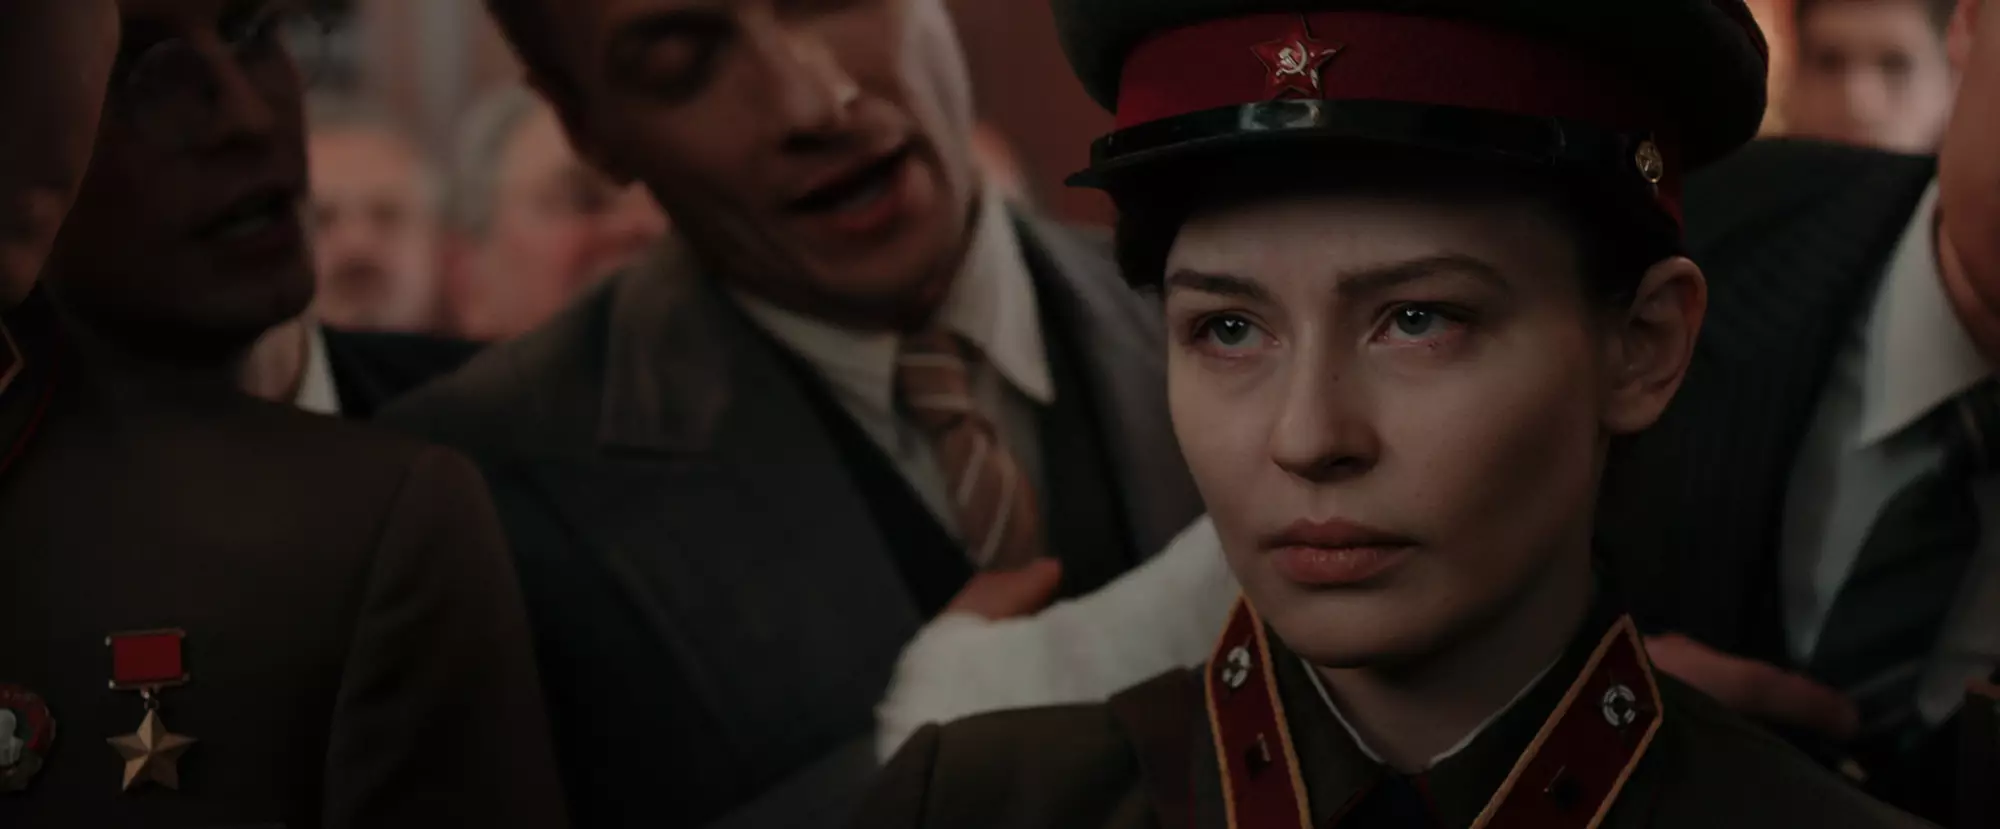 Кадр из фильма "Битва за Севастополь"/"Несокрушимая"